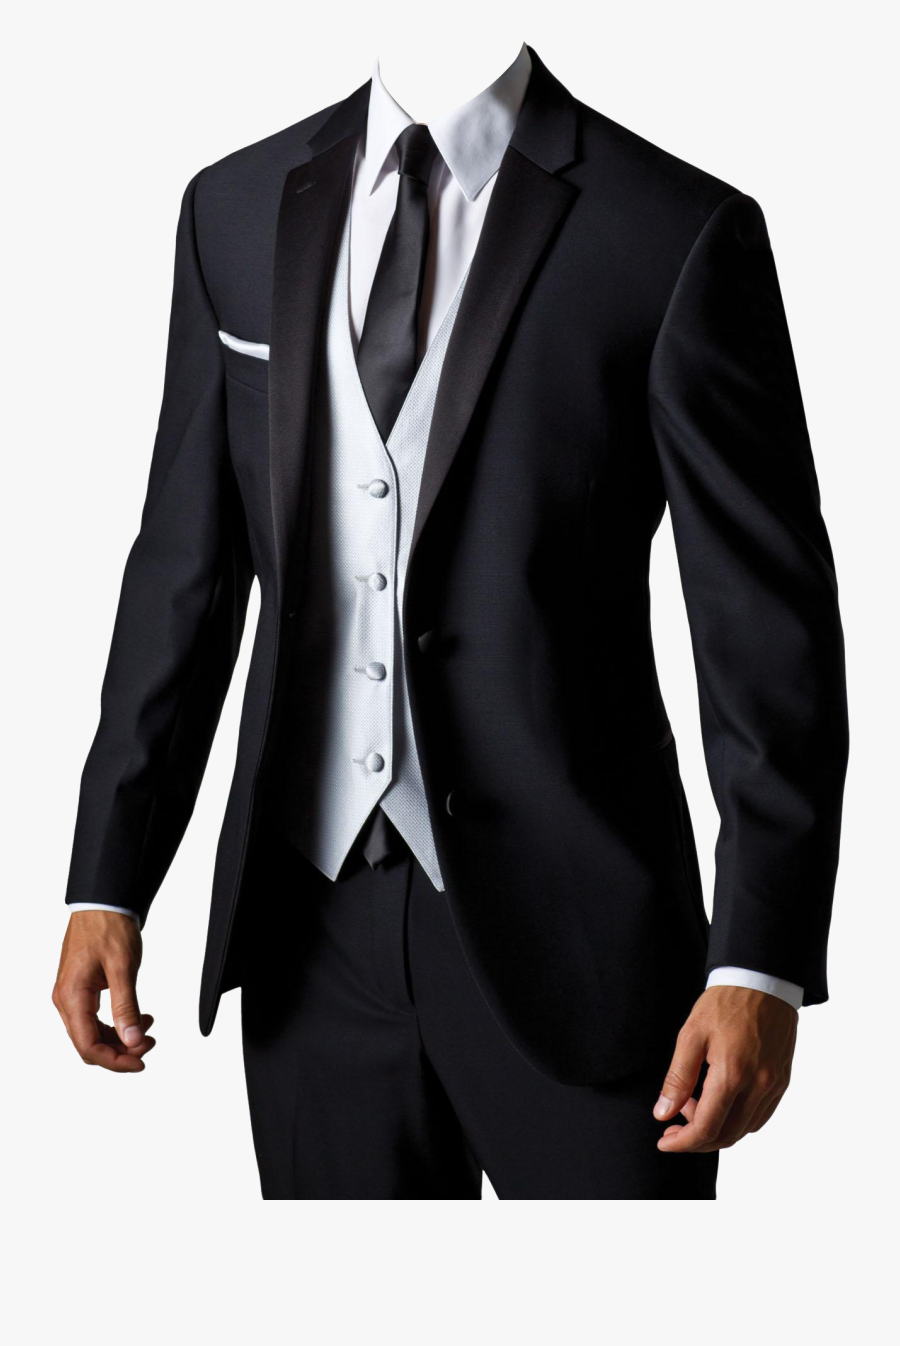 Suit Jacket Blazer Coat - Mens Suit Design Png, Transparent Clipart